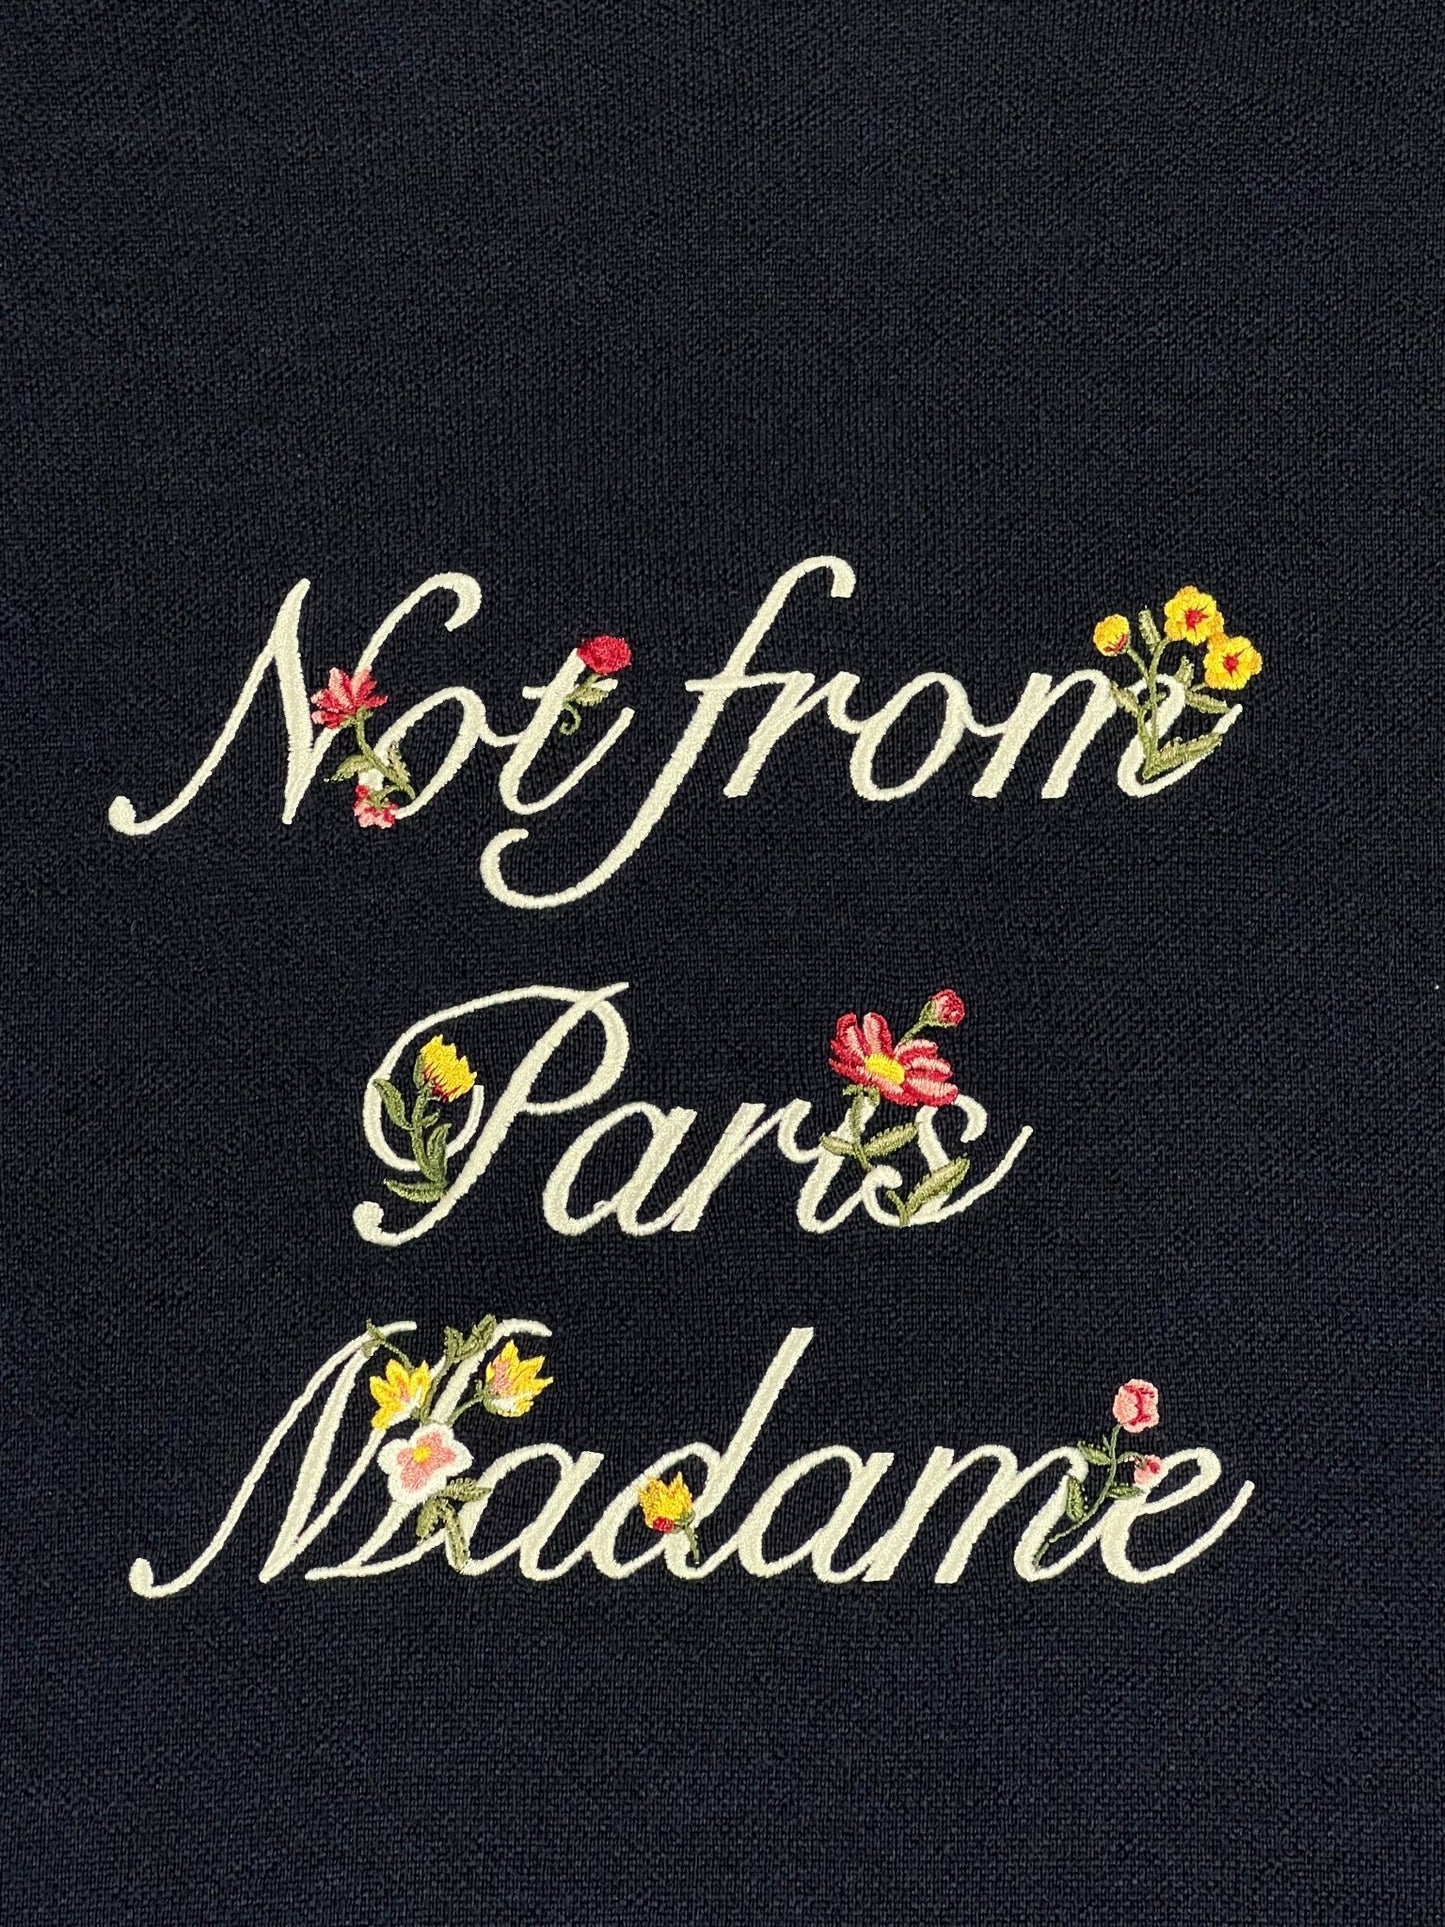 Not from Paris, madame DROLE DE MONSIEUR sweatshirt.